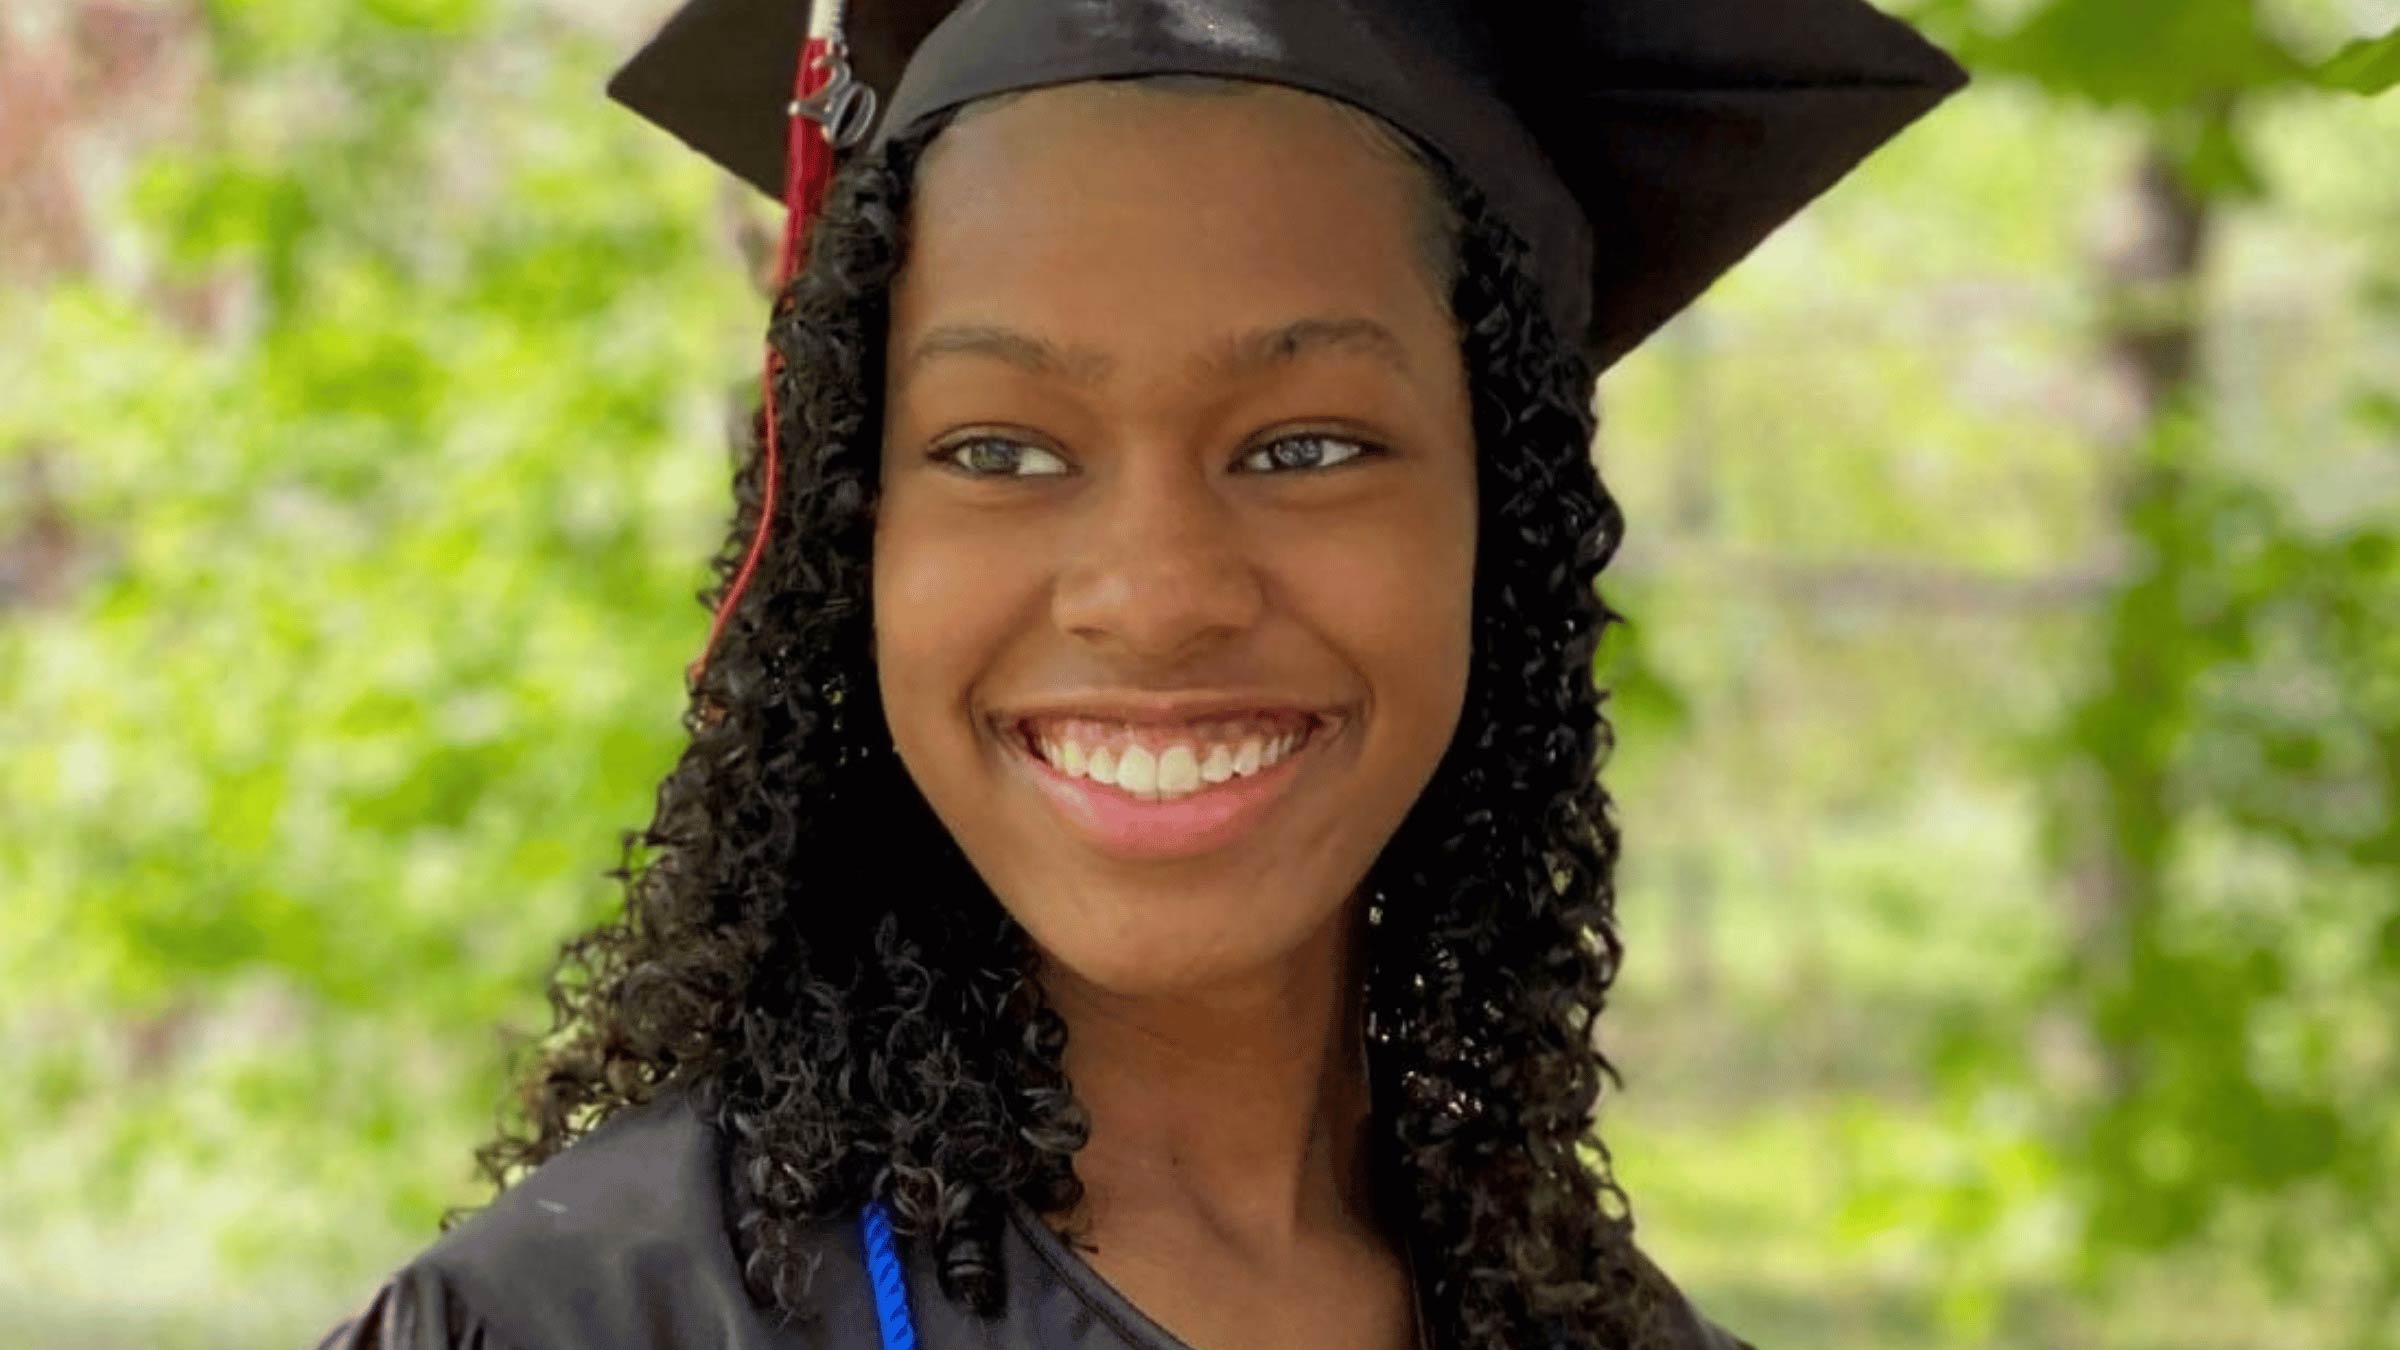 Young woman wearing graduation cap